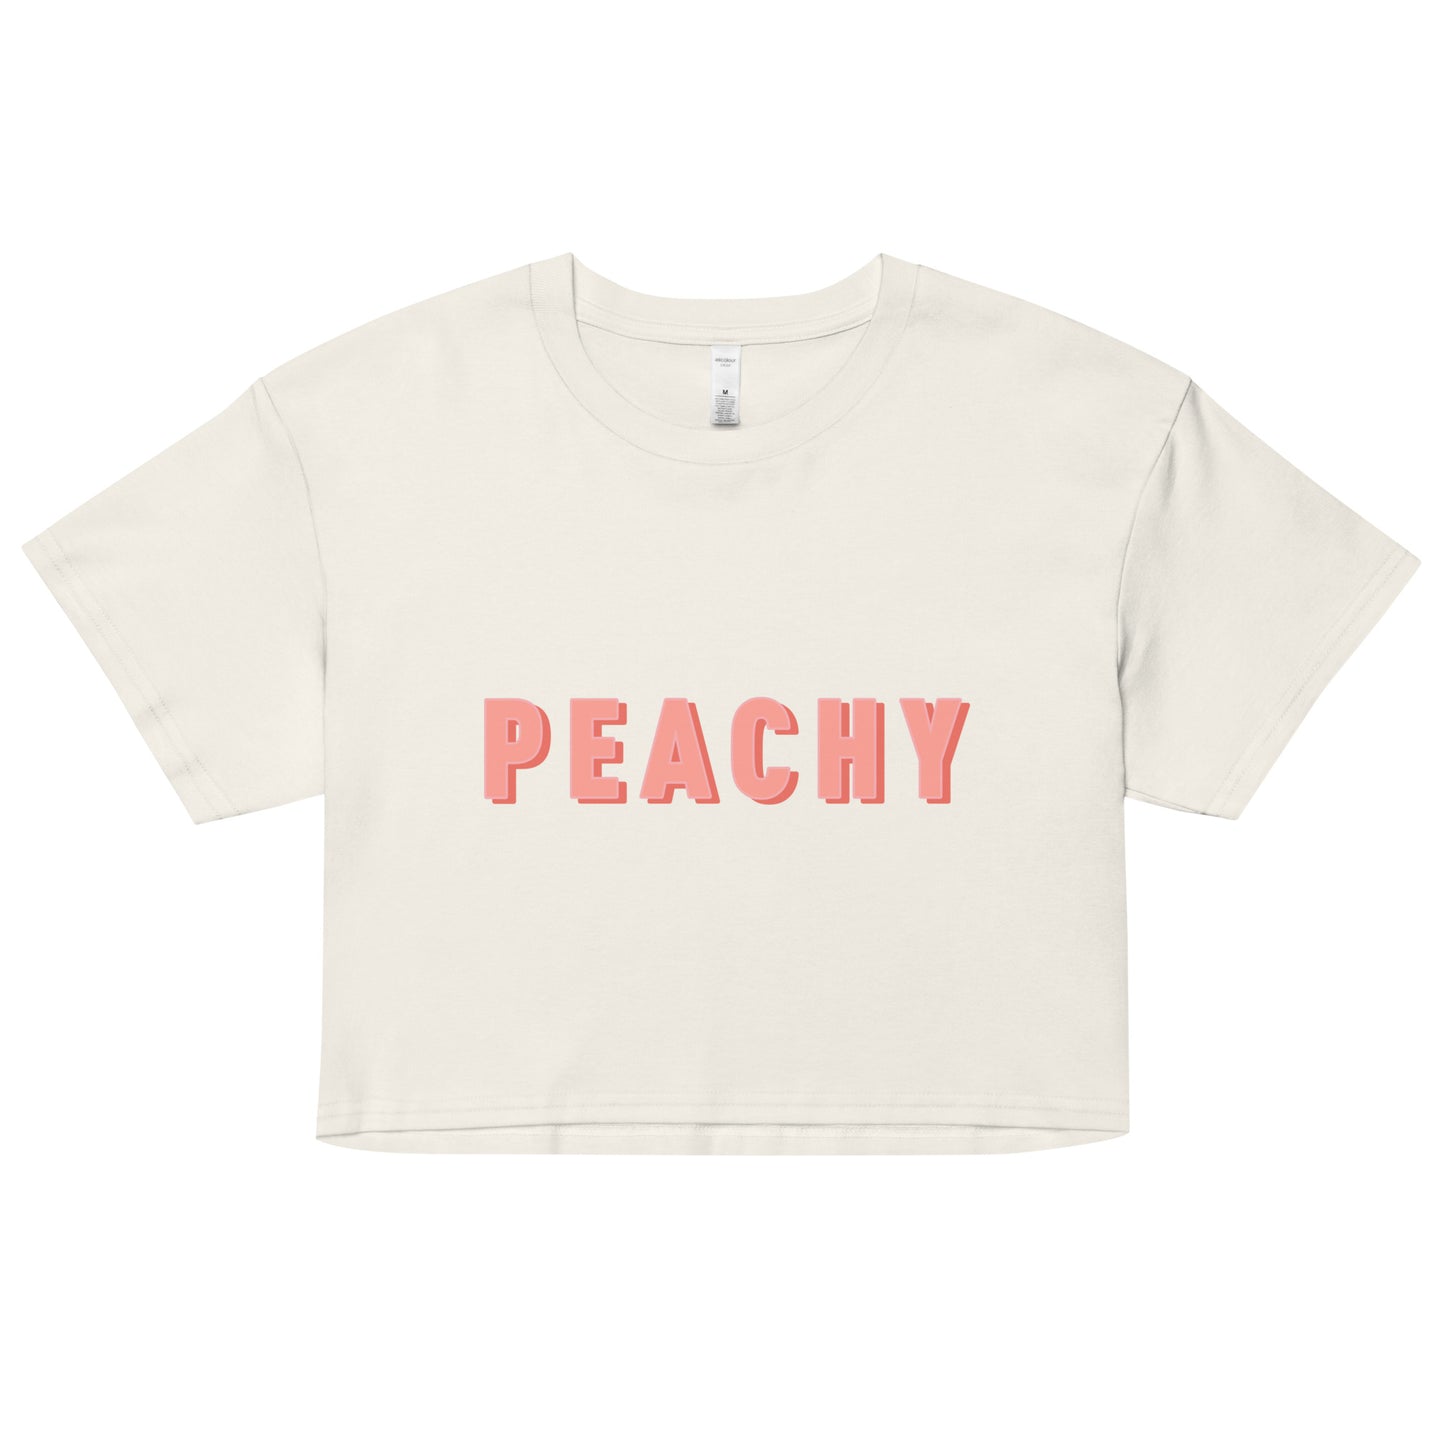 Peachy Women’s crop top